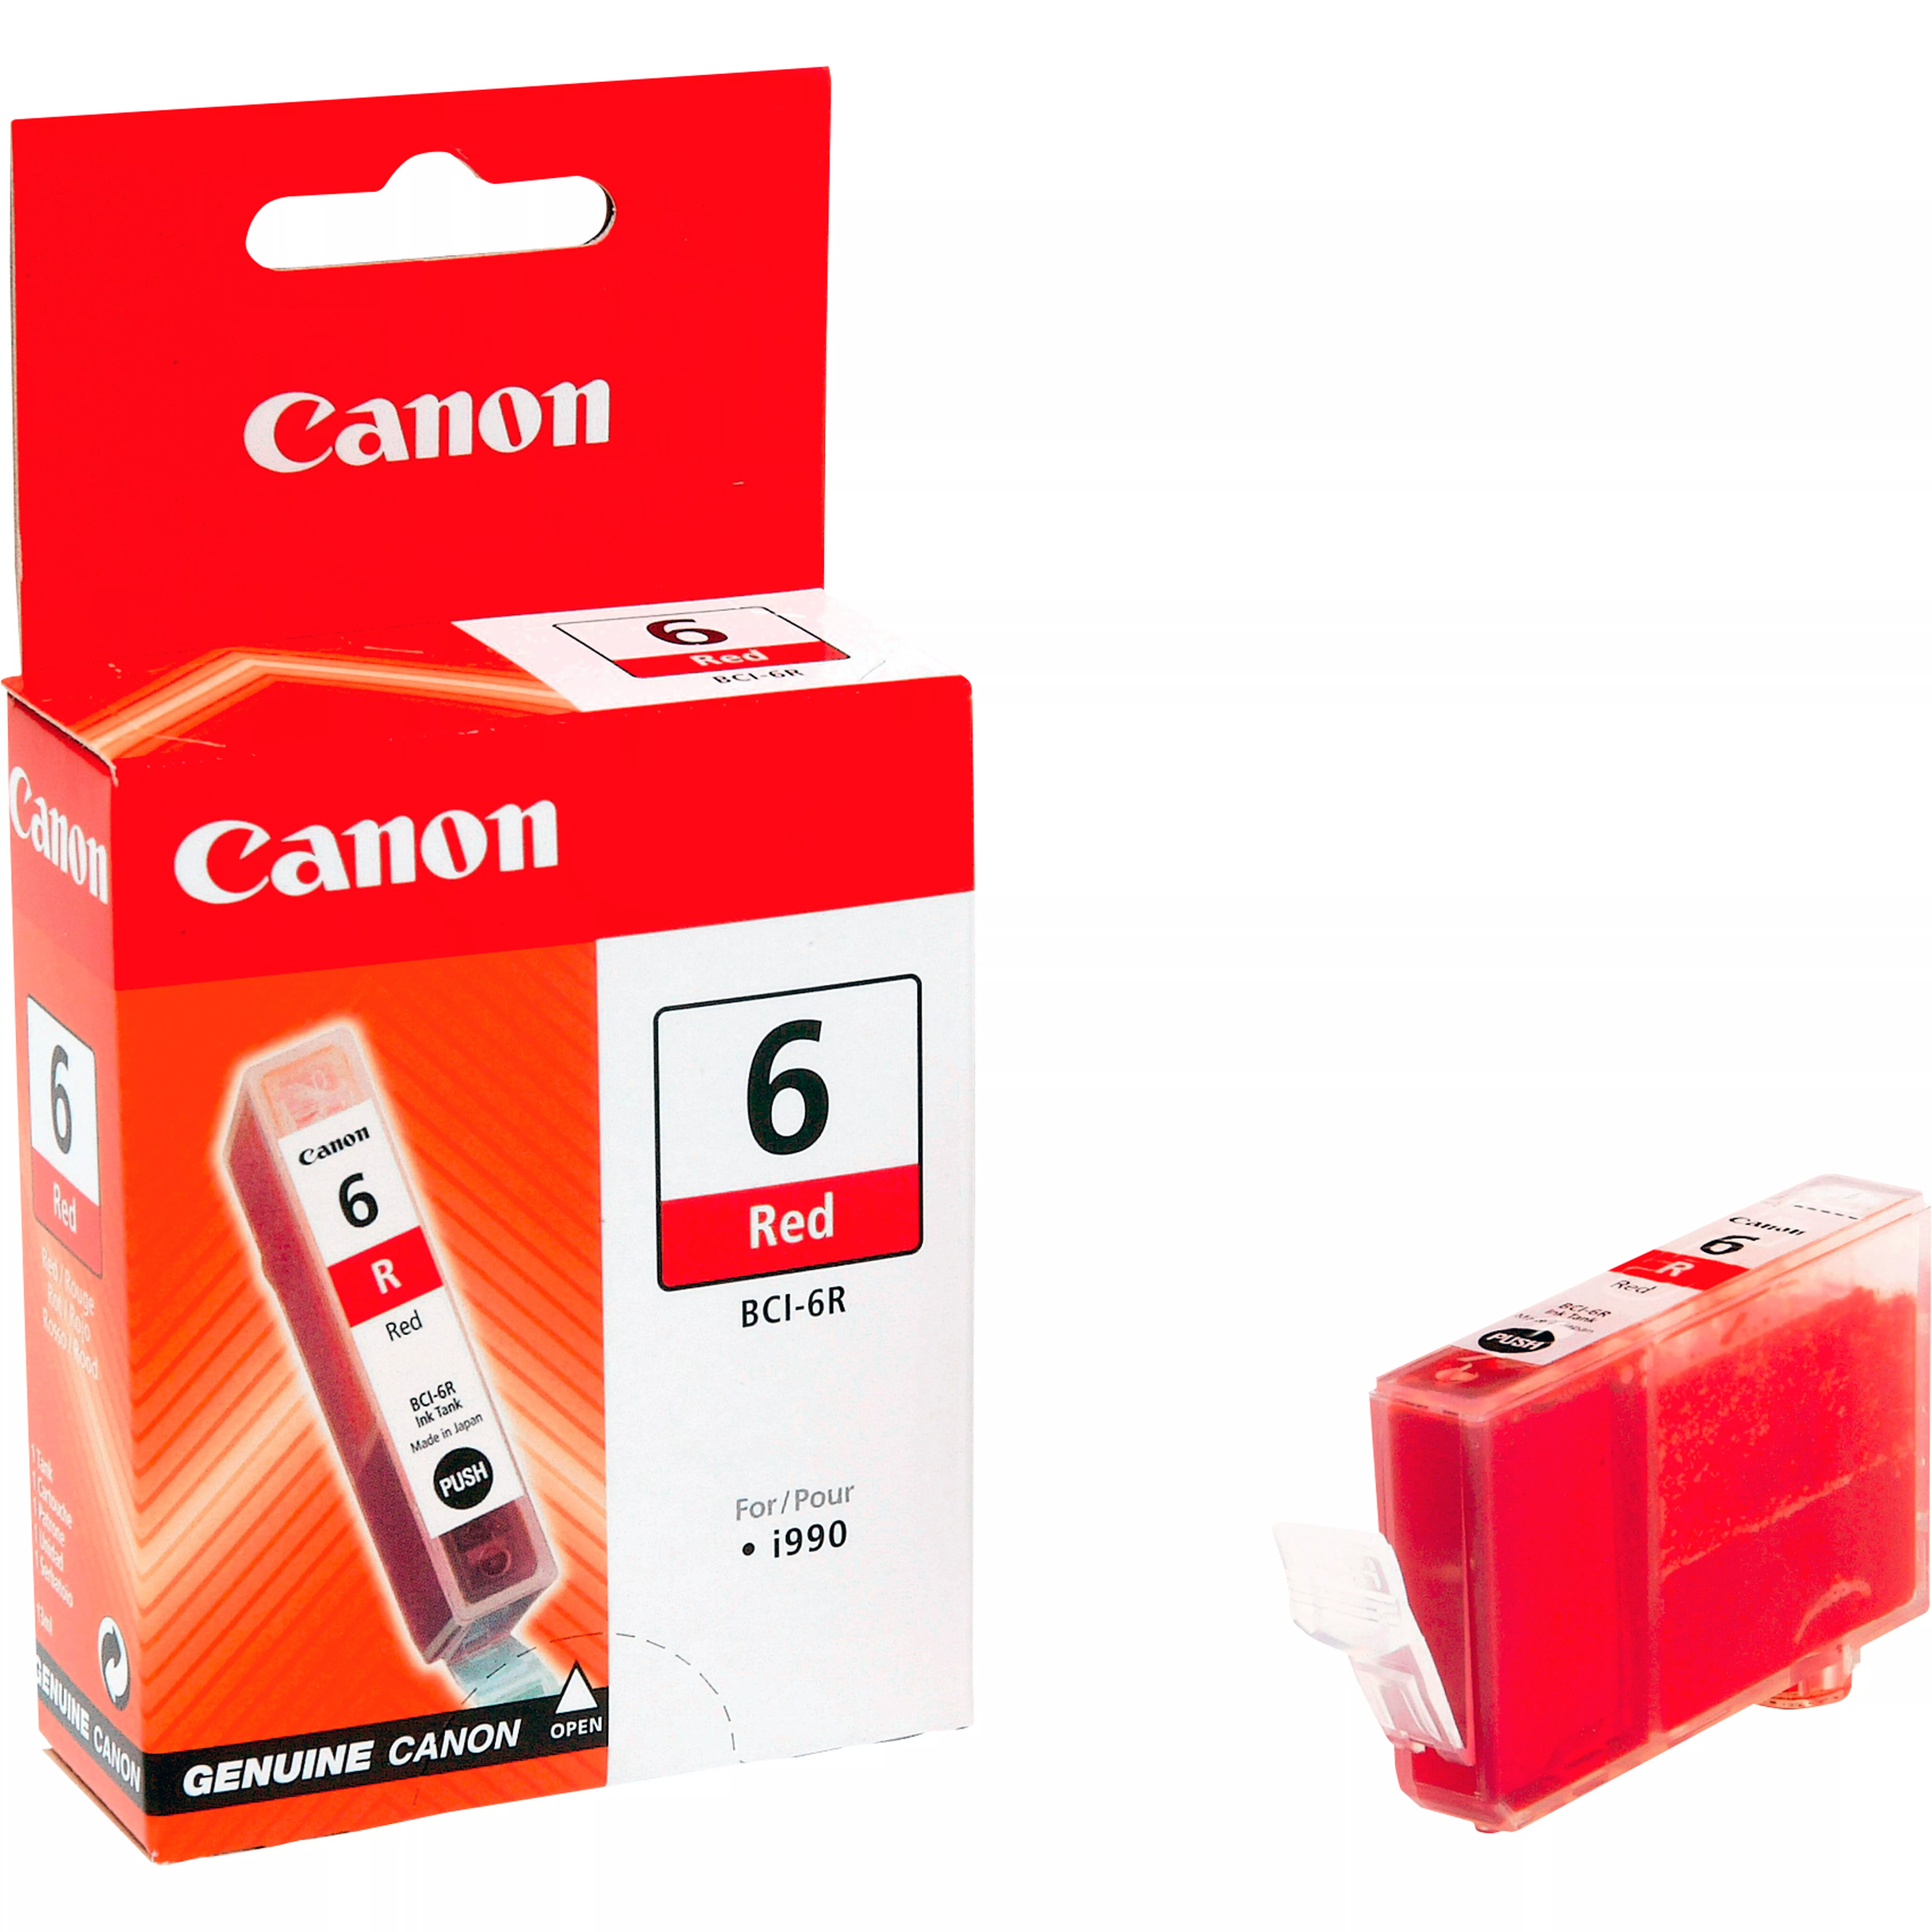 Vente CANON BCI-6R cartouche d encre rouge capacité standard au meilleur prix